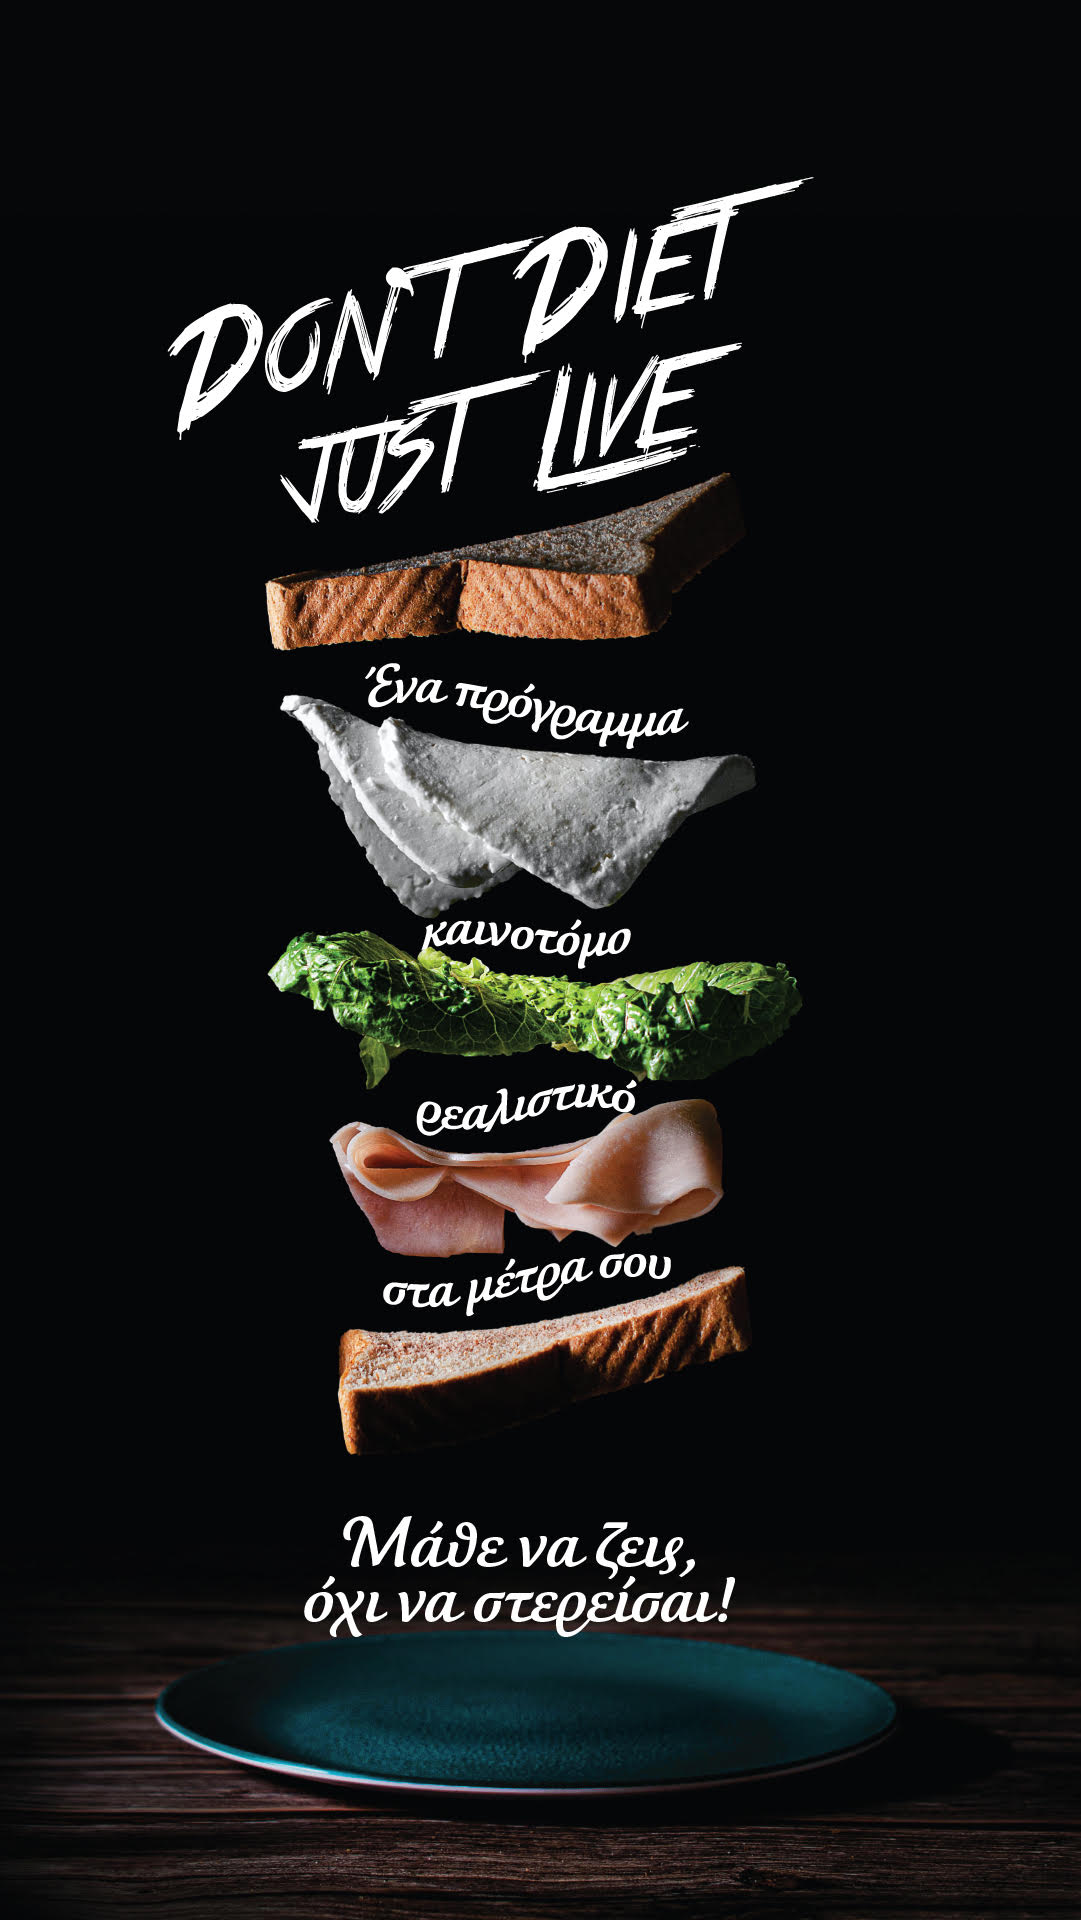 DDJL 3 - Dont diet, Just live